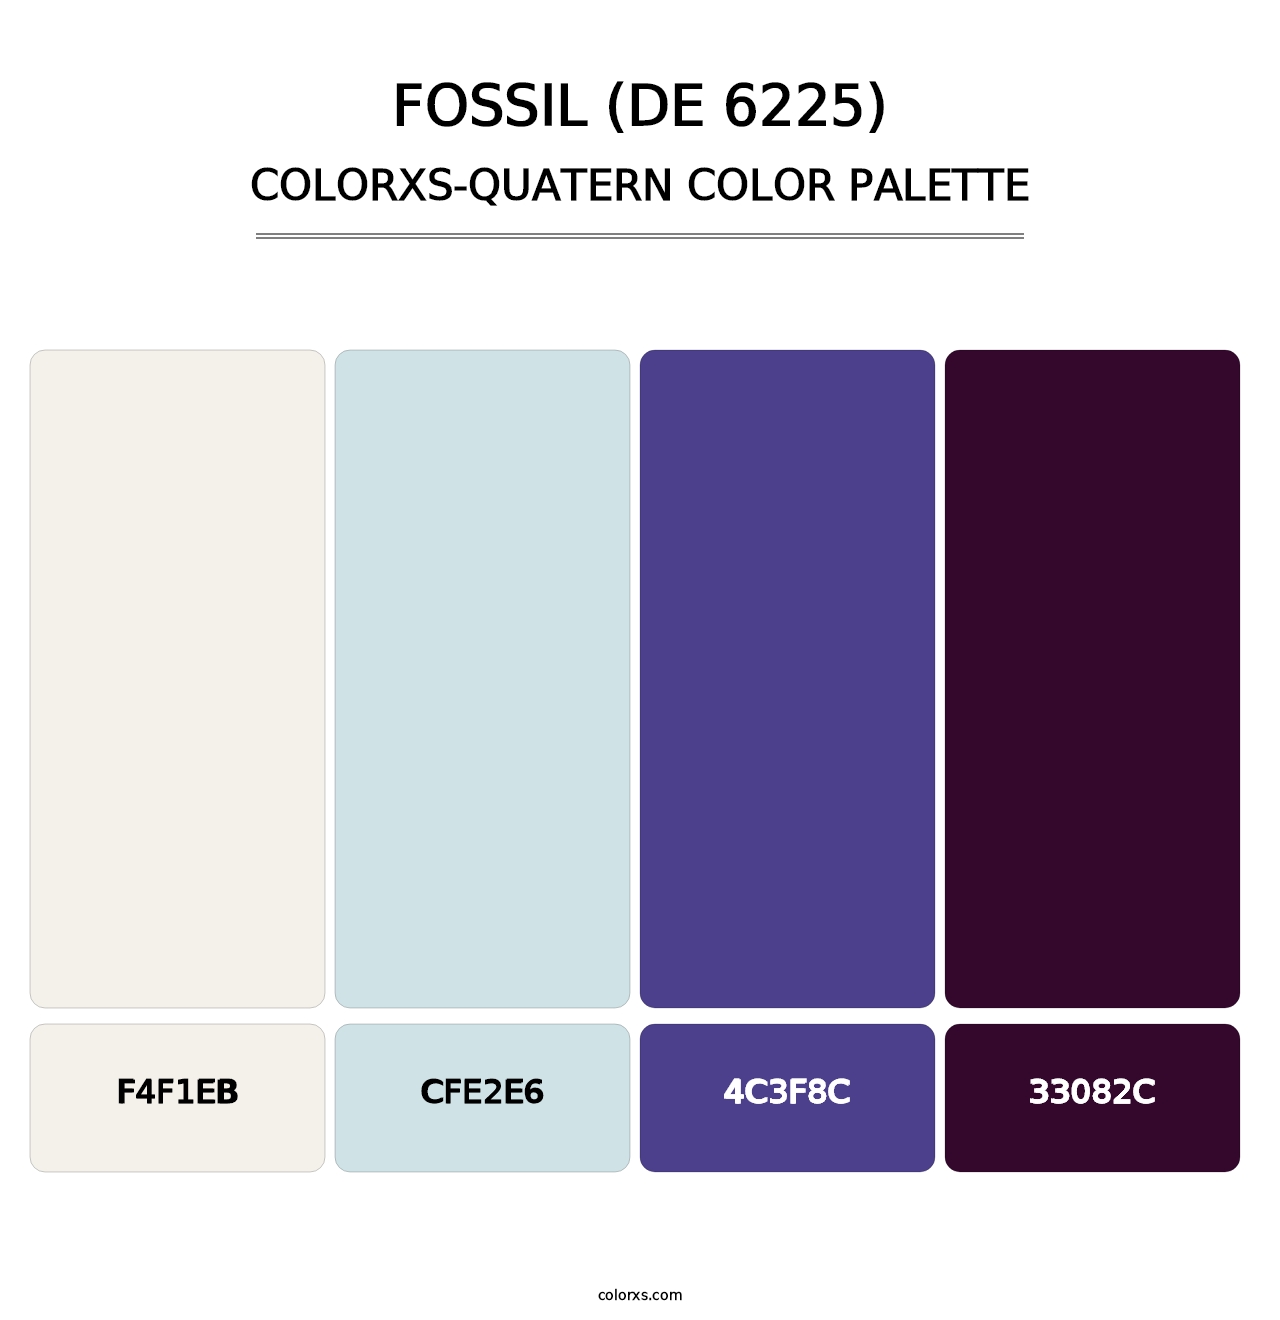 Fossil (DE 6225) - Colorxs Quatern Palette